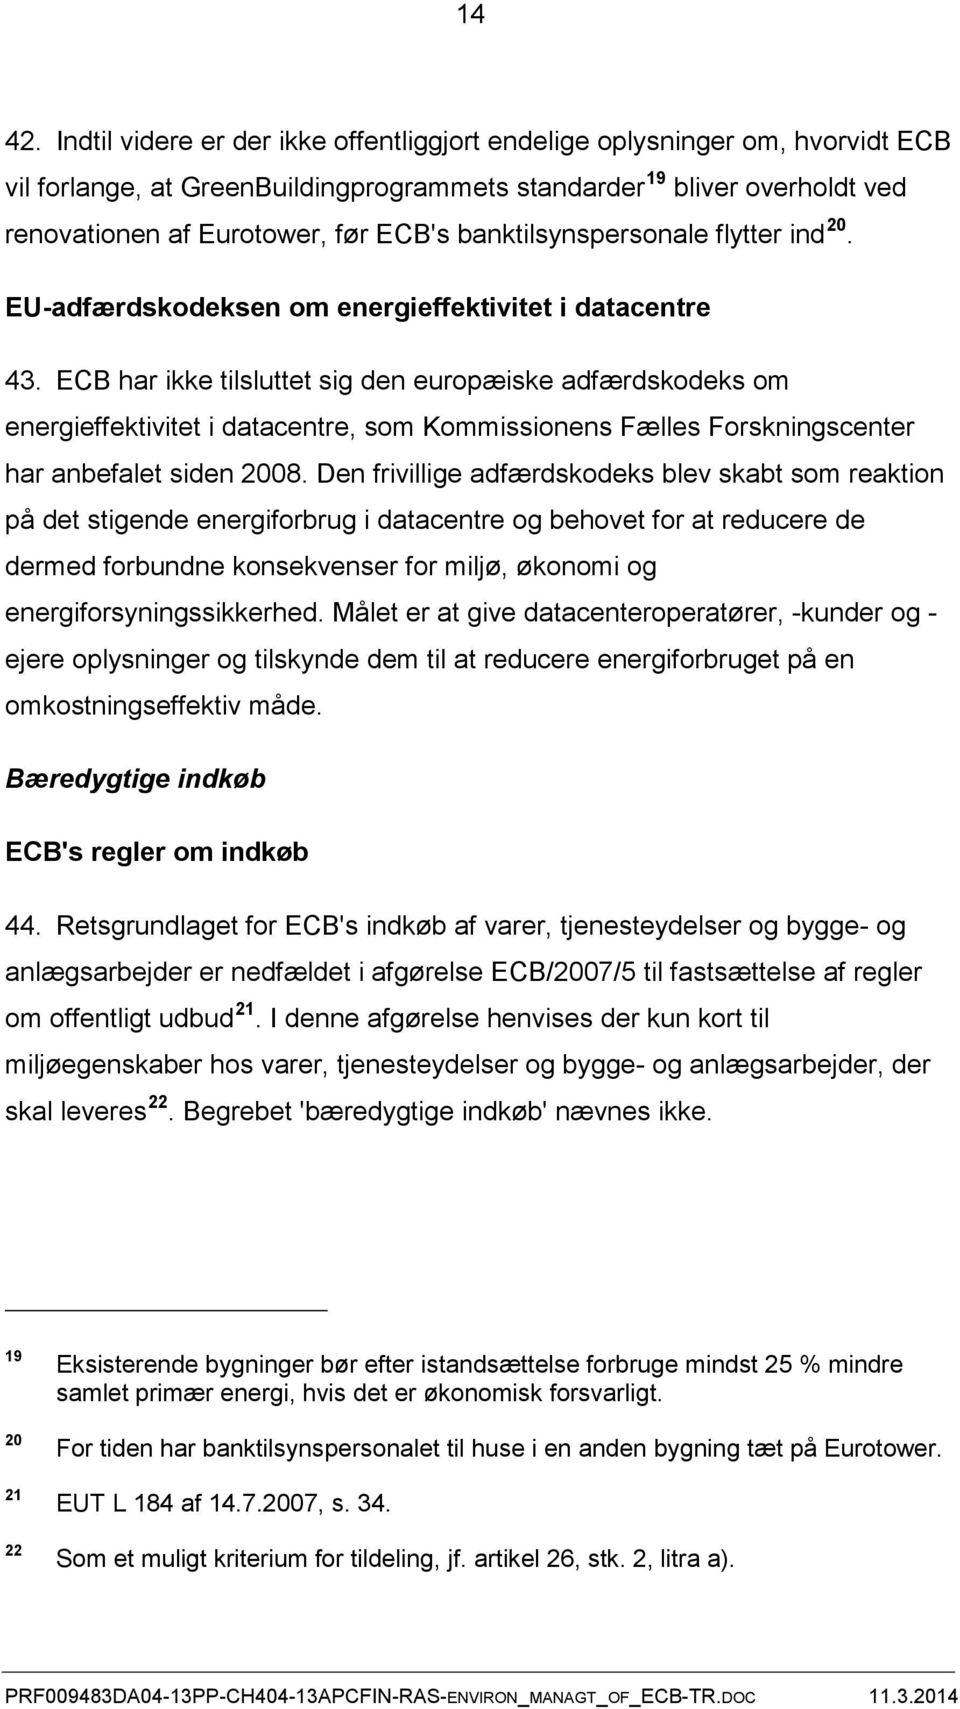 banktilsynspersonale flytter ind 20. EU-adfærdskodeksen om energieffektivitet i datacentre 43.